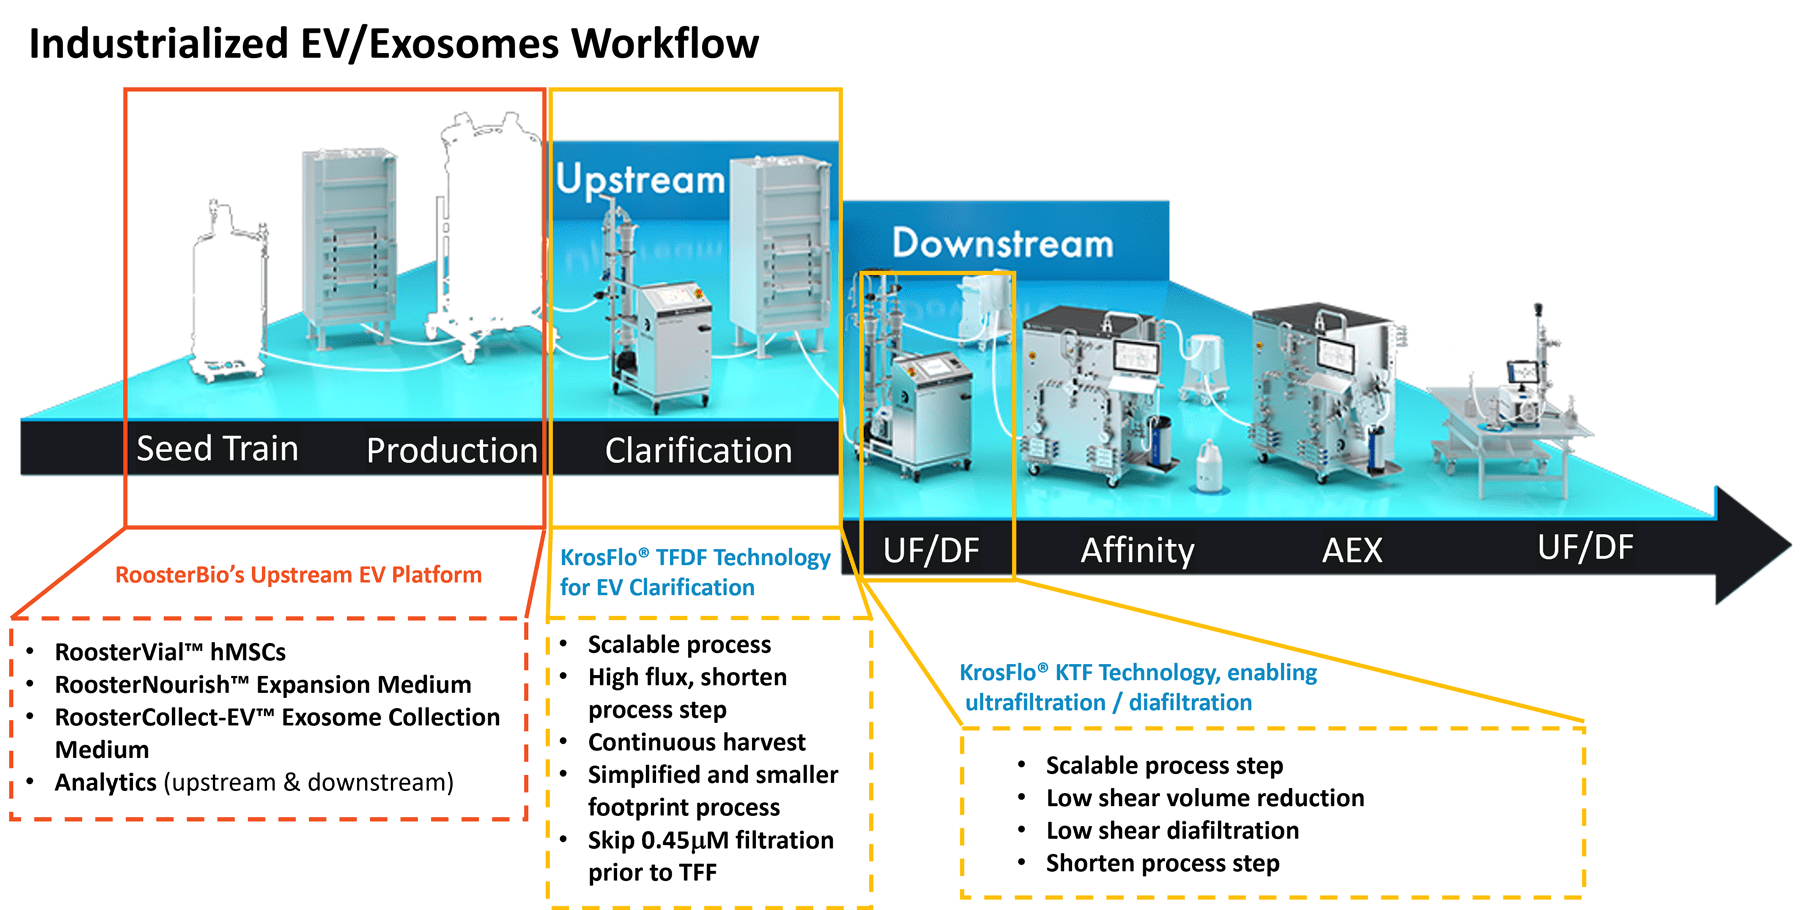 Industrialized-Exosome-Workflow